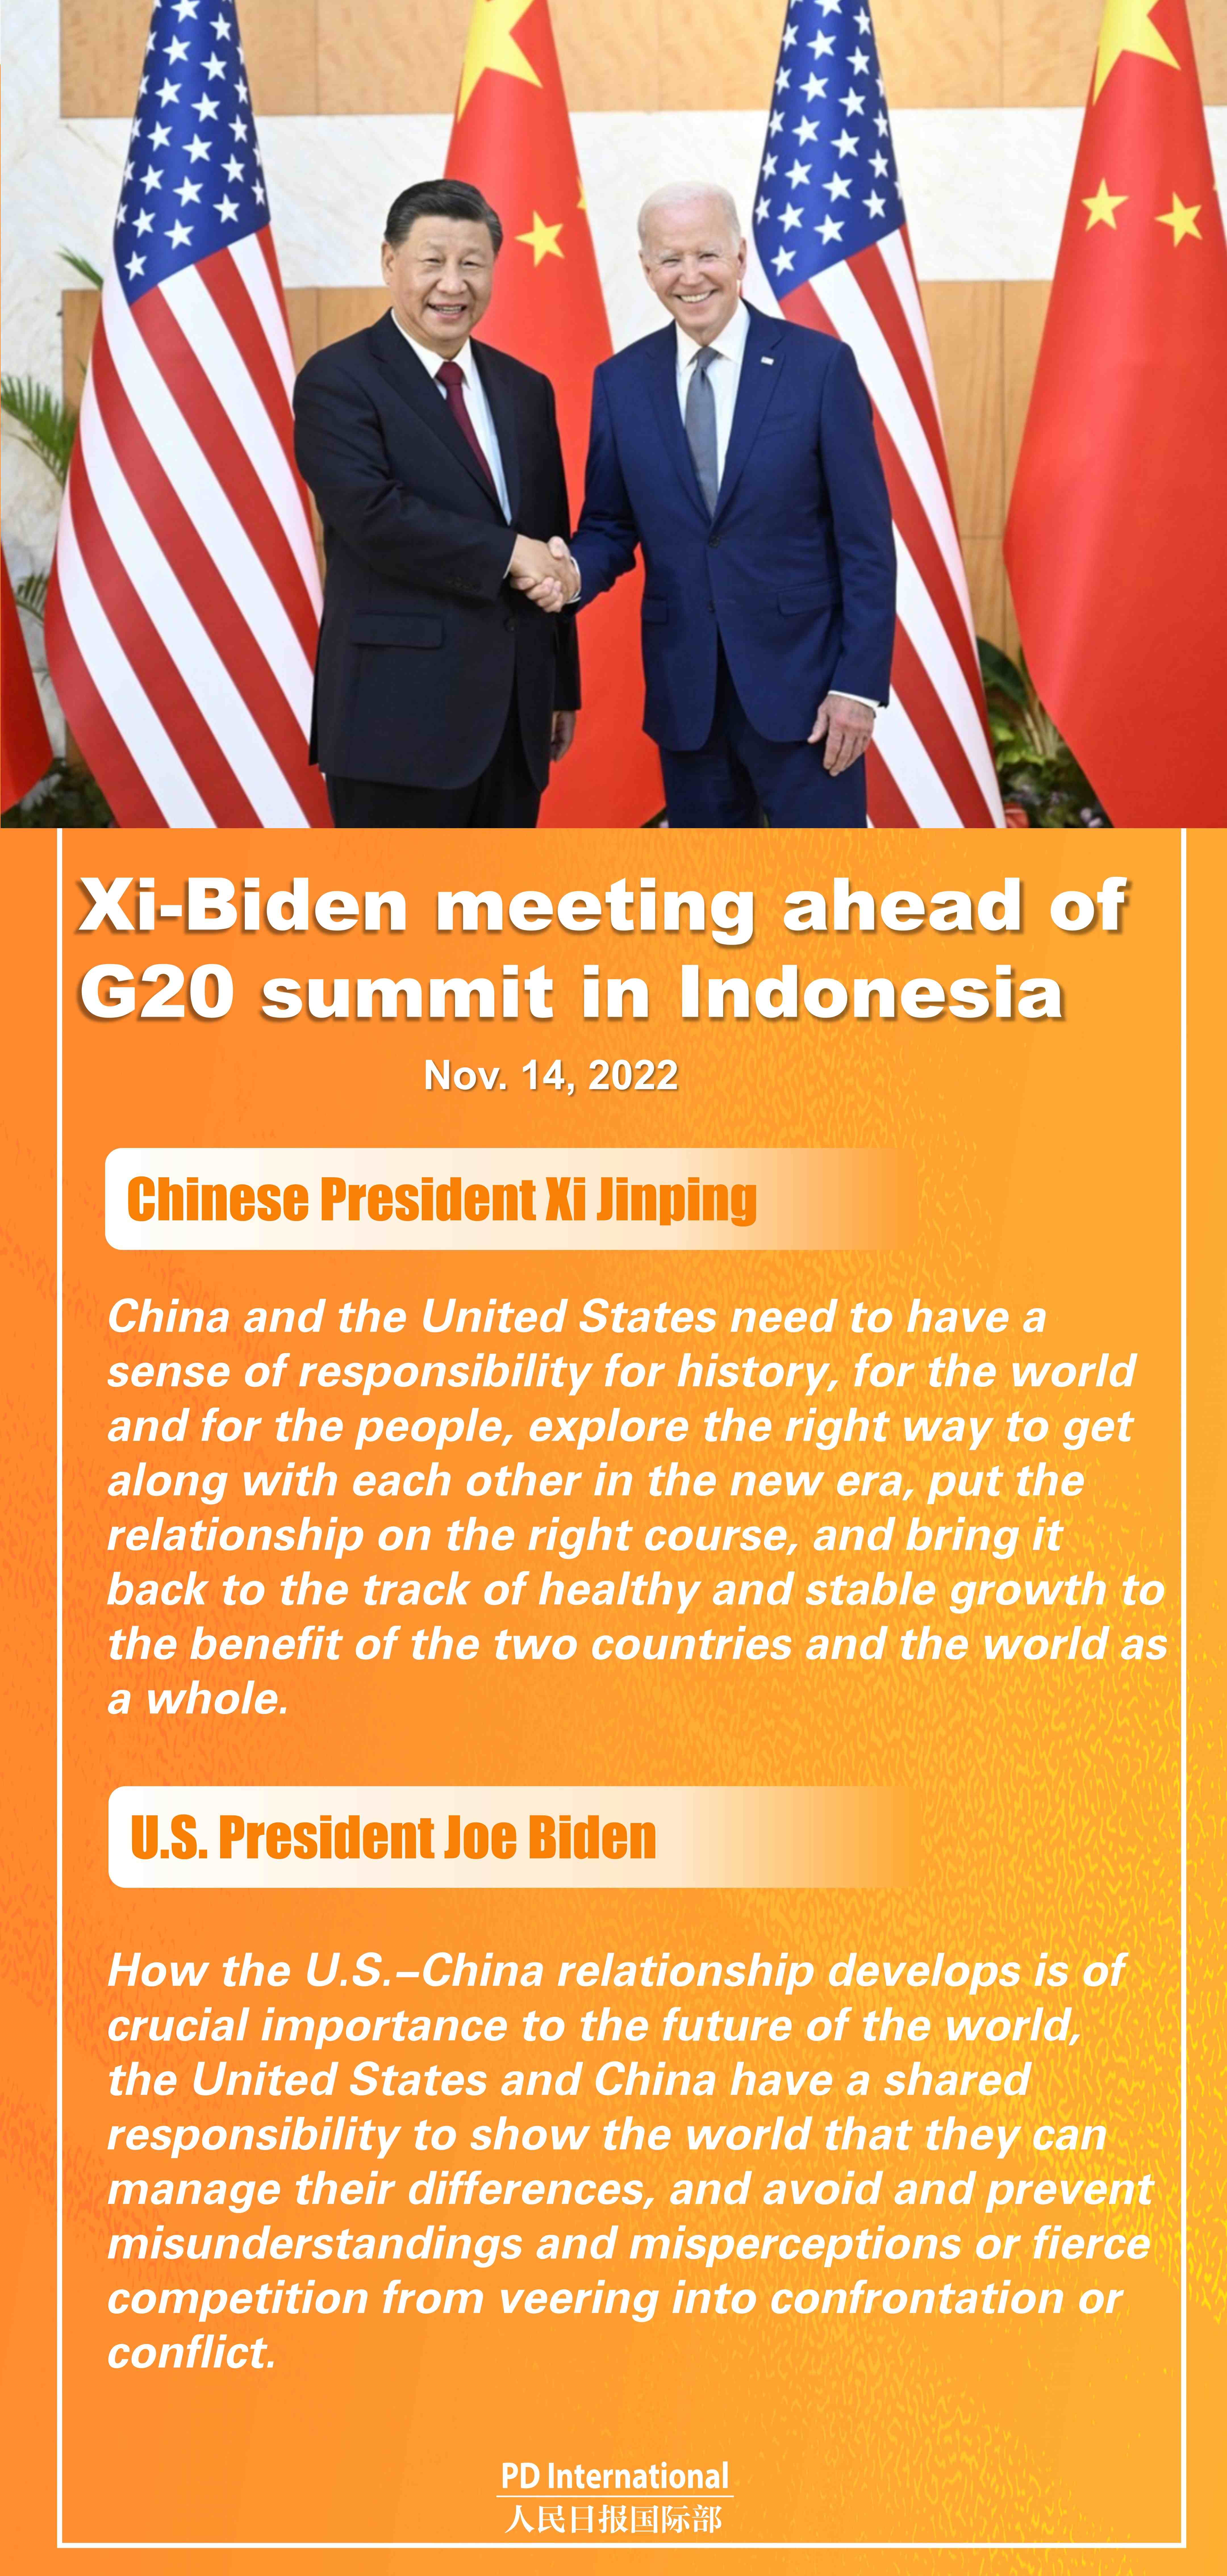 Xi-Biden meeting ahead of G20 summit in Indonesia